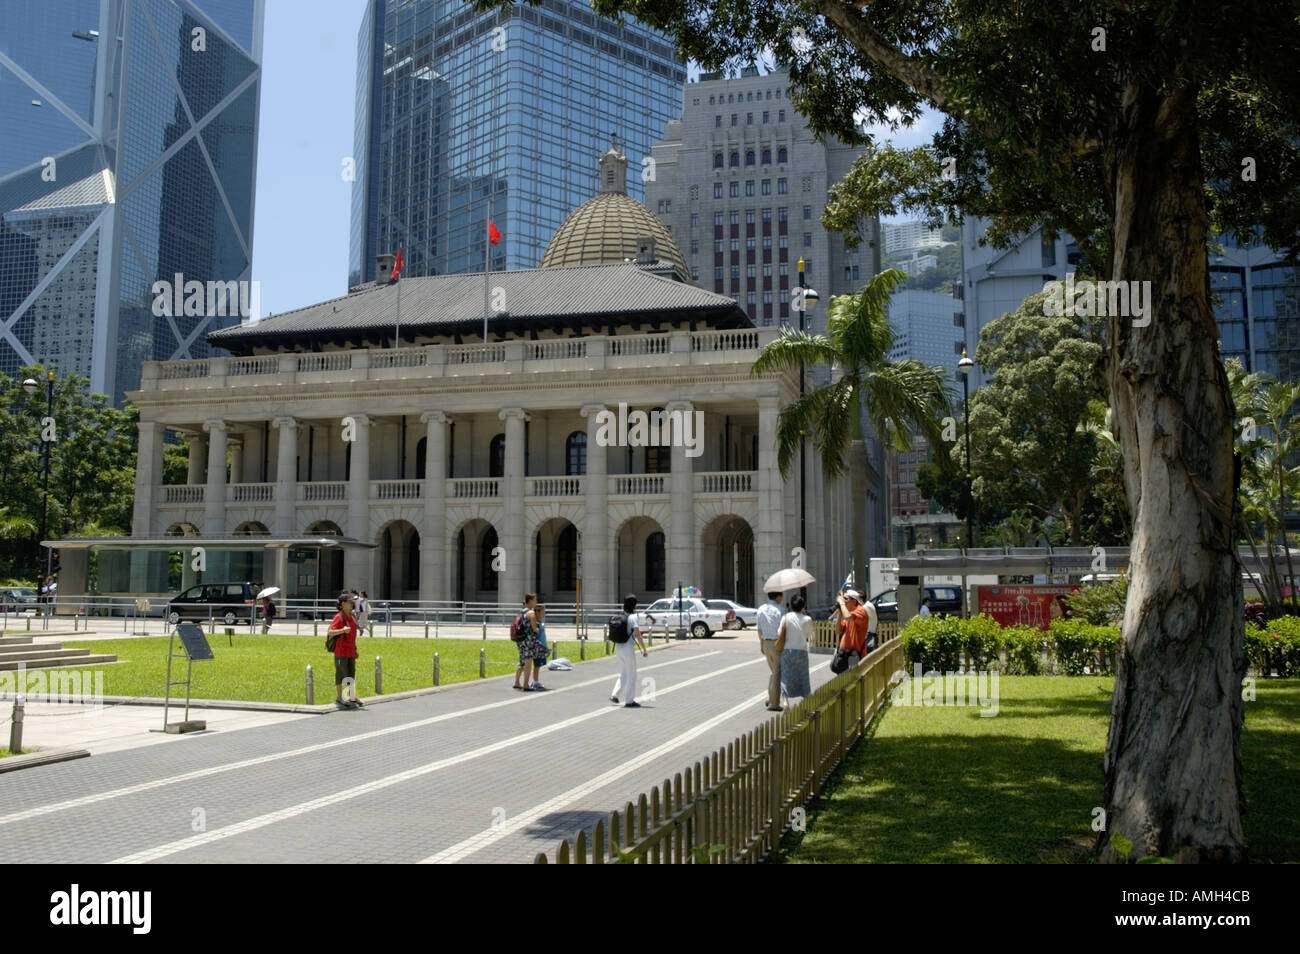 The Legislative Council Building / Hong Kong Parliament, Statue Square, Hong Kong, China. Stock Photo